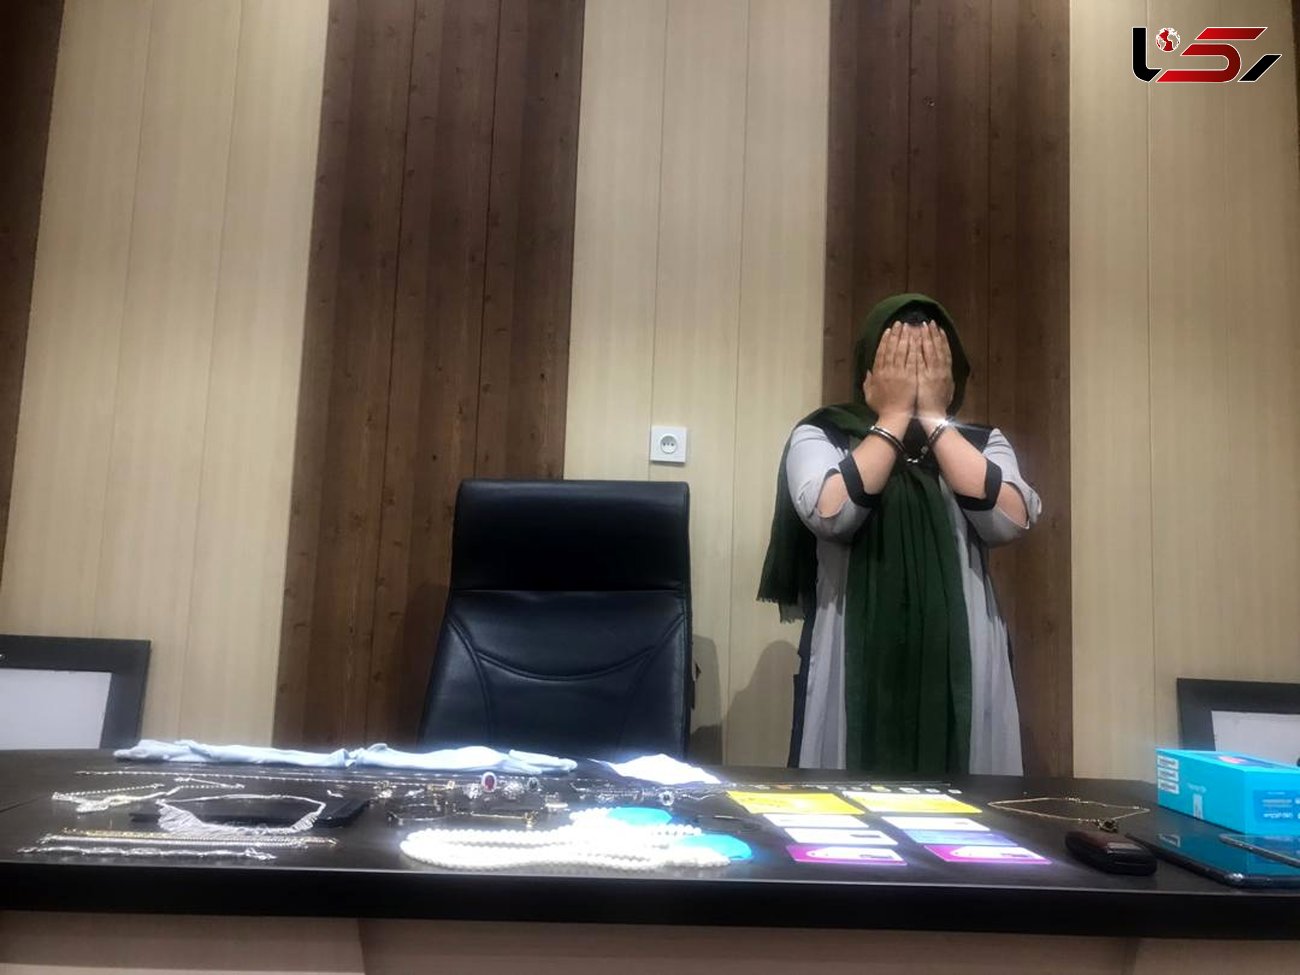 این زن تهرانی را می شناسید؟ / اقدام پلید ثریا در اتاق های خصوصی زن و شوهر ها! + عکس